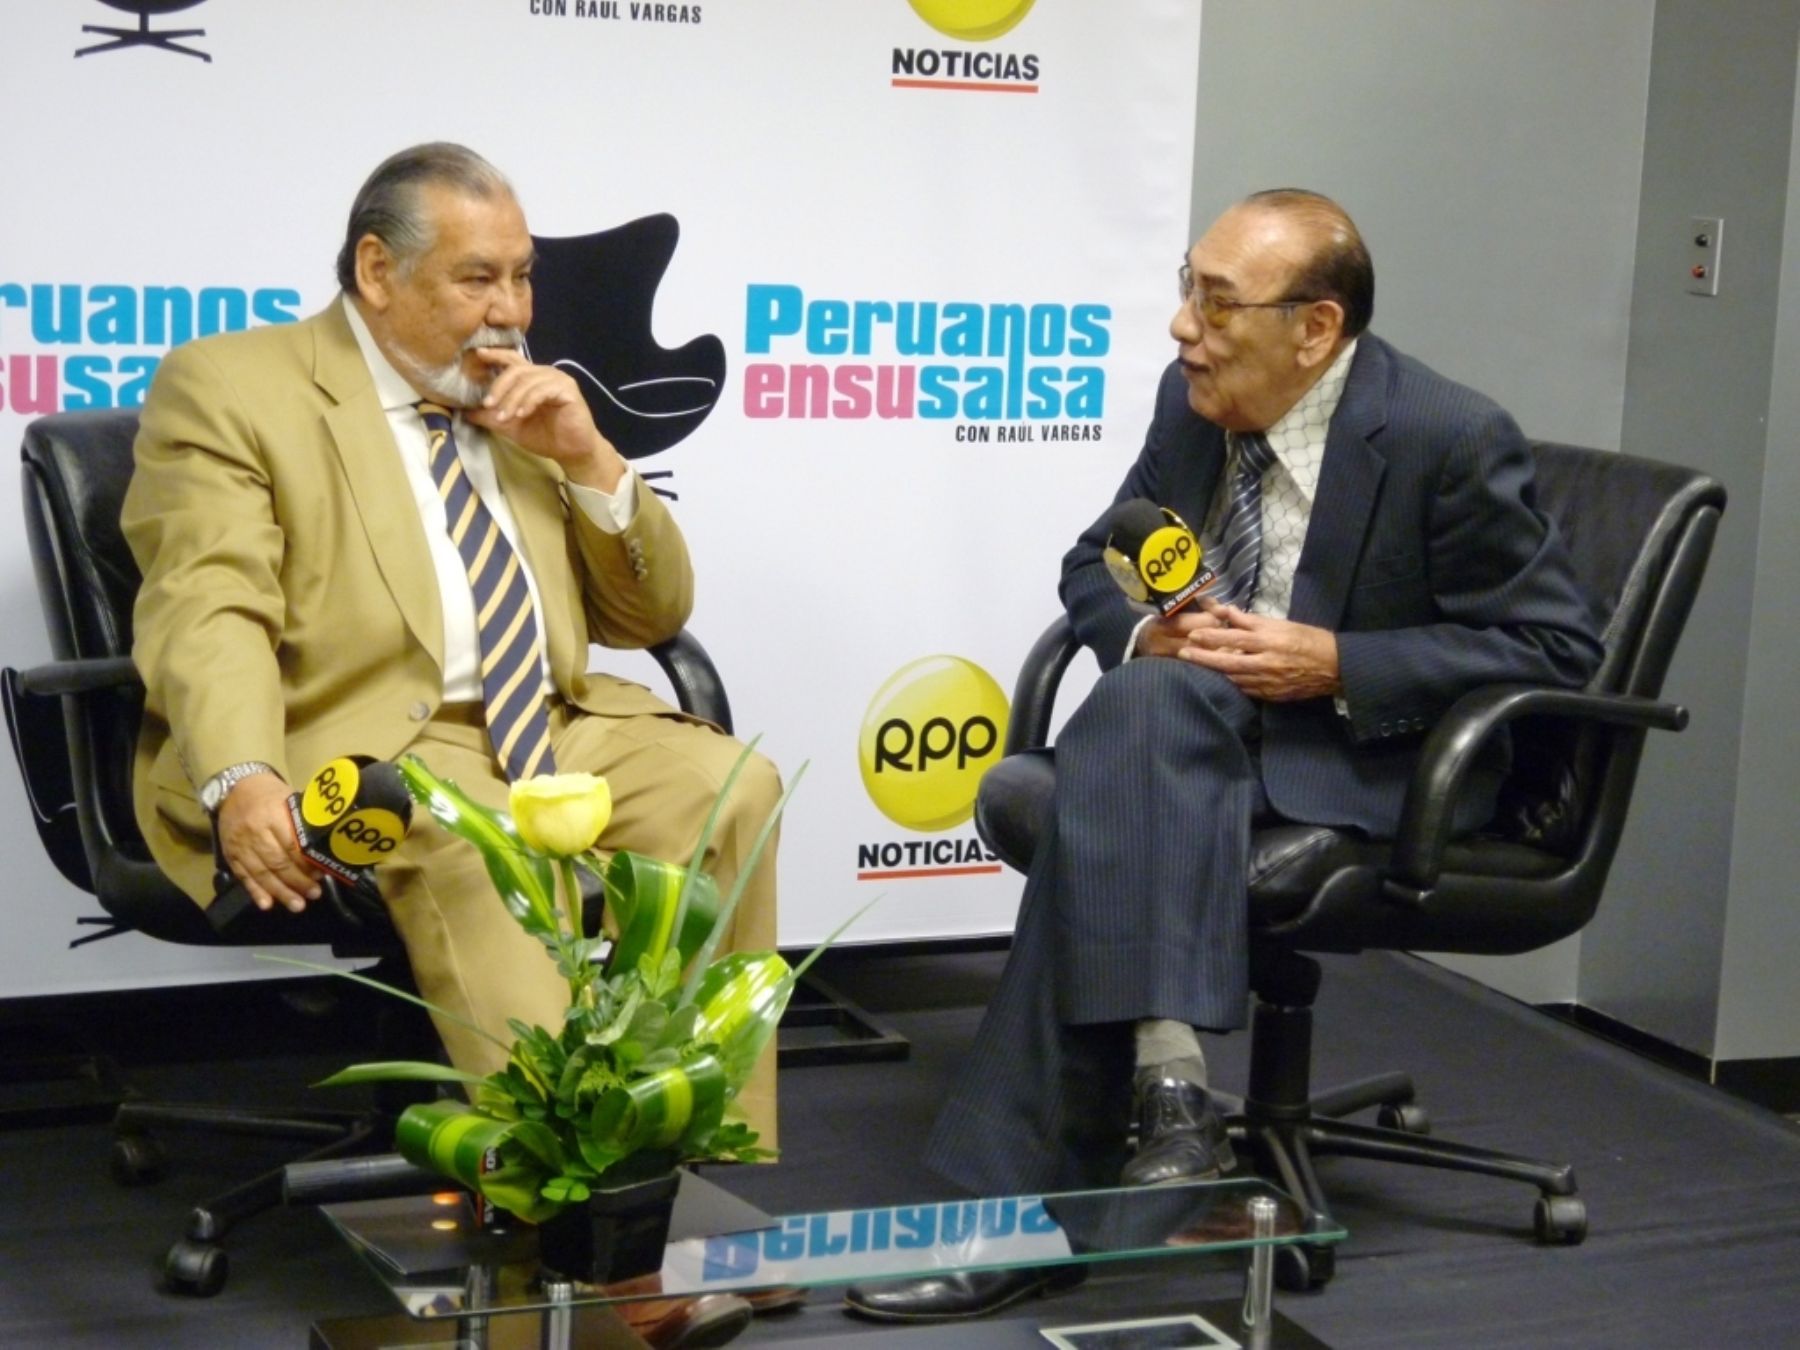 Don Oscar Avilés es el primer invitado de Peruanos en su salsa, programa a cargo de Raúl Vargas por TVPerú.